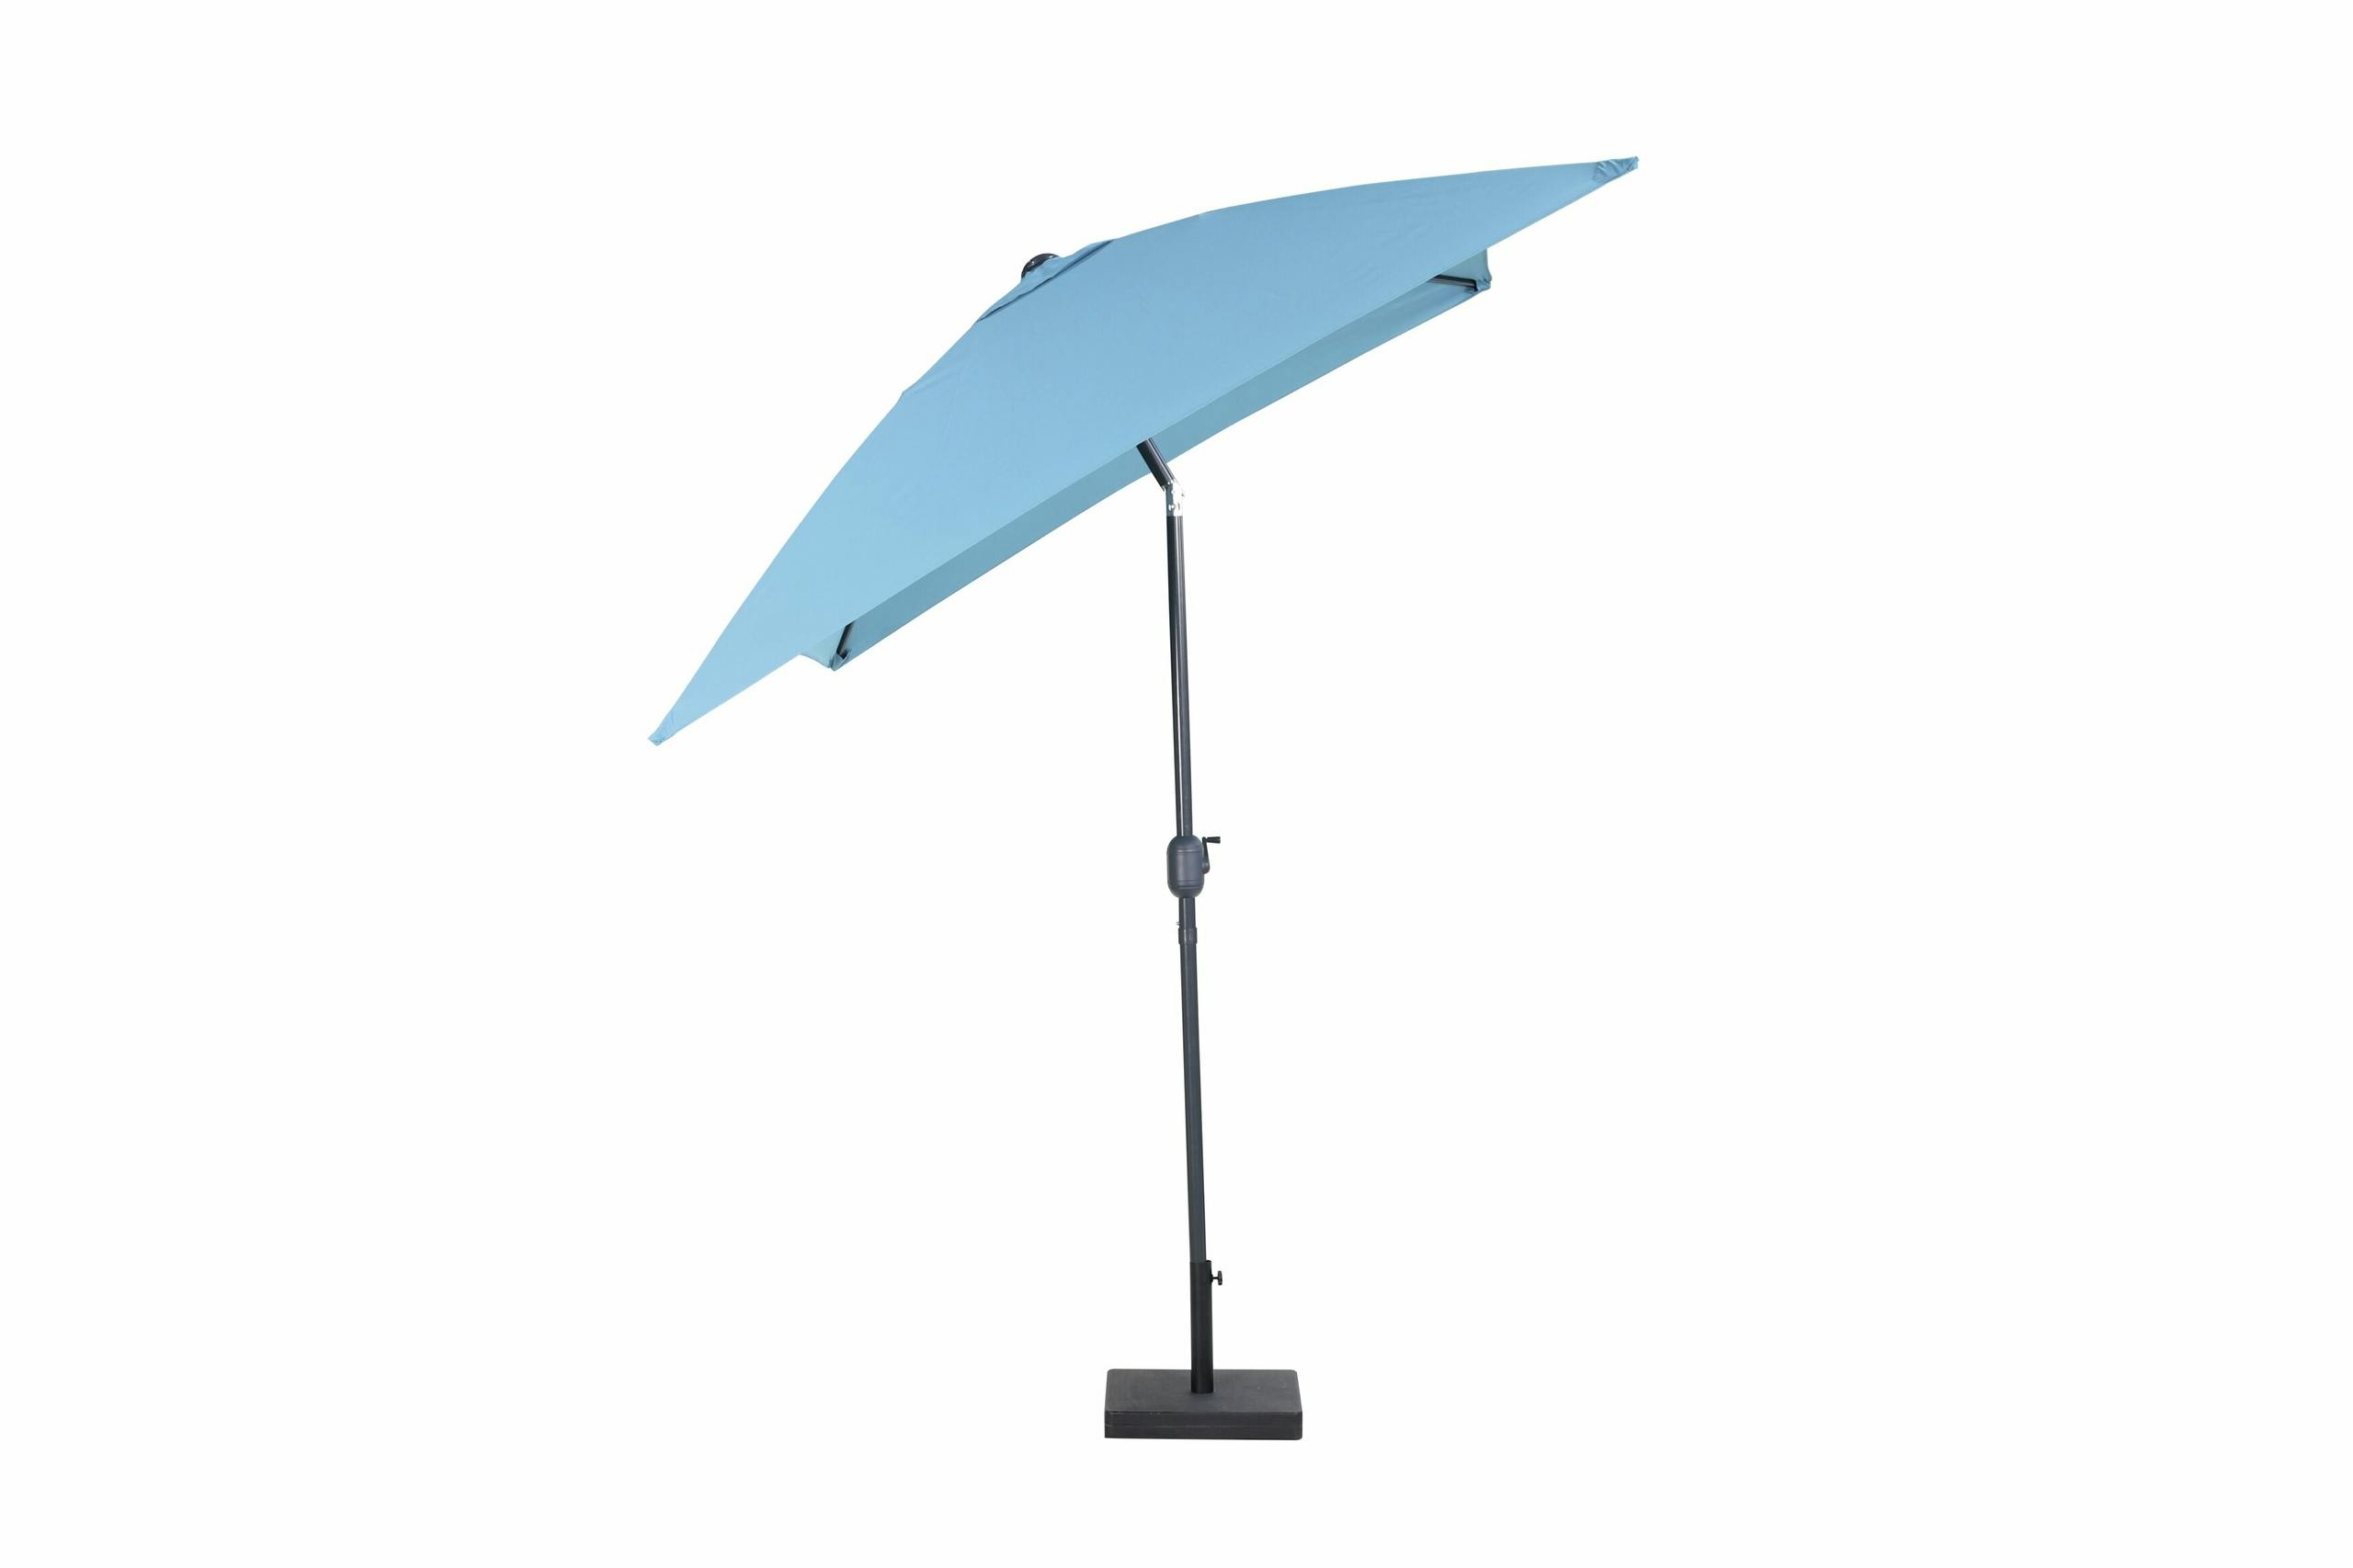 Tiago Blauwe Paraplu Met Alu Centre 300x200cm